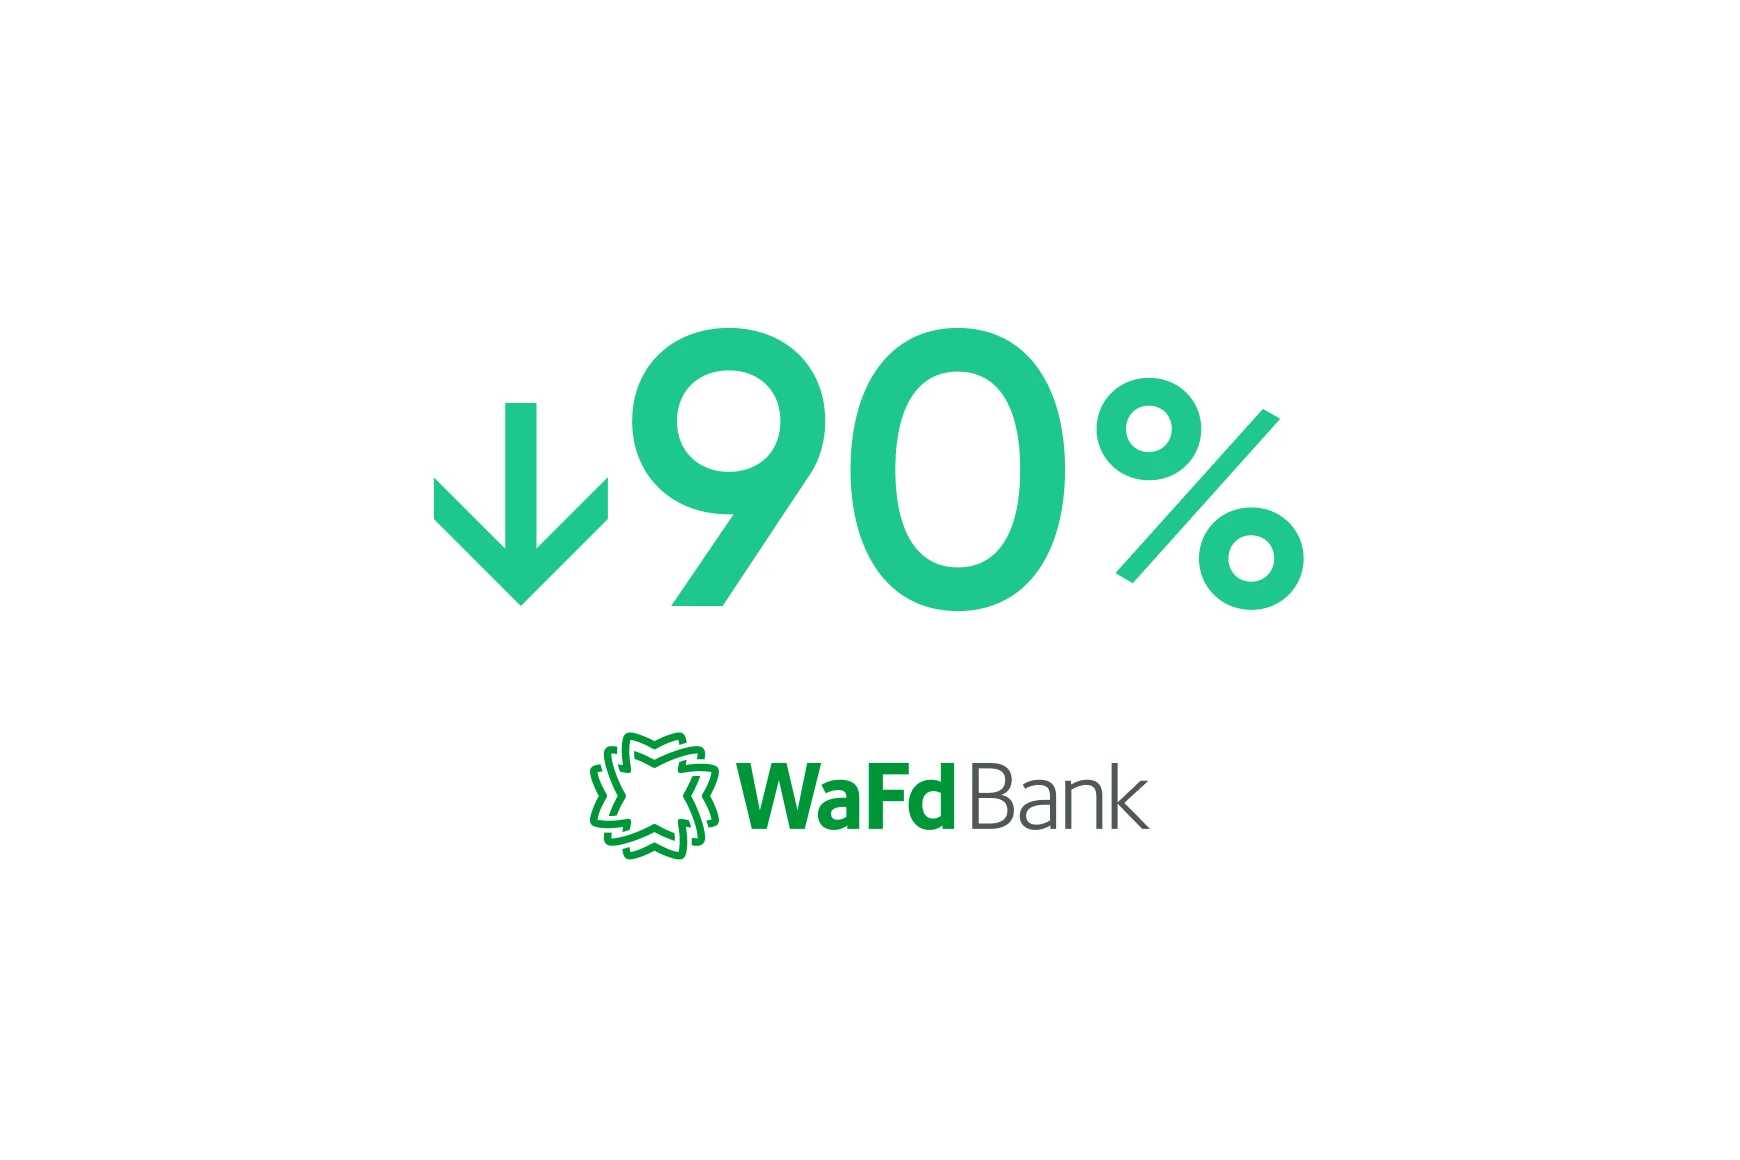 La WaFd Bank : L'IA conversationnelle réduit le temps de vérification du solde de 90 %